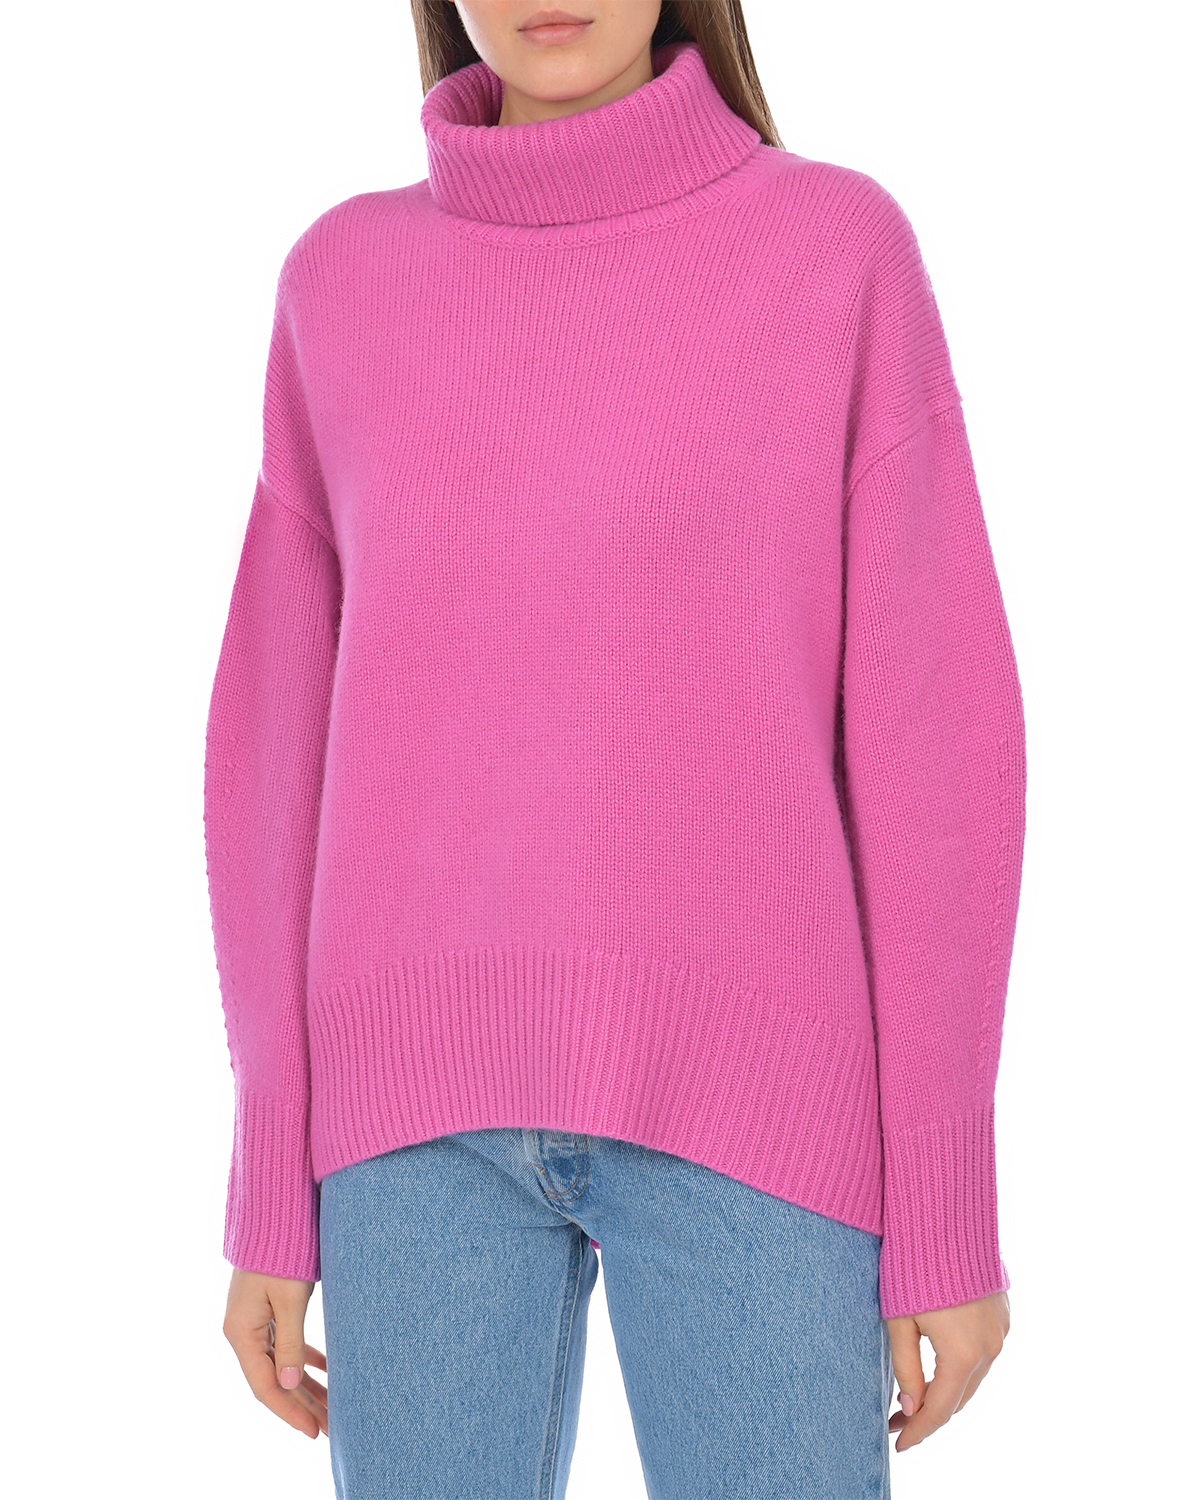 Розовый свитер из кашемира Arch4, размер 38 - фото 7